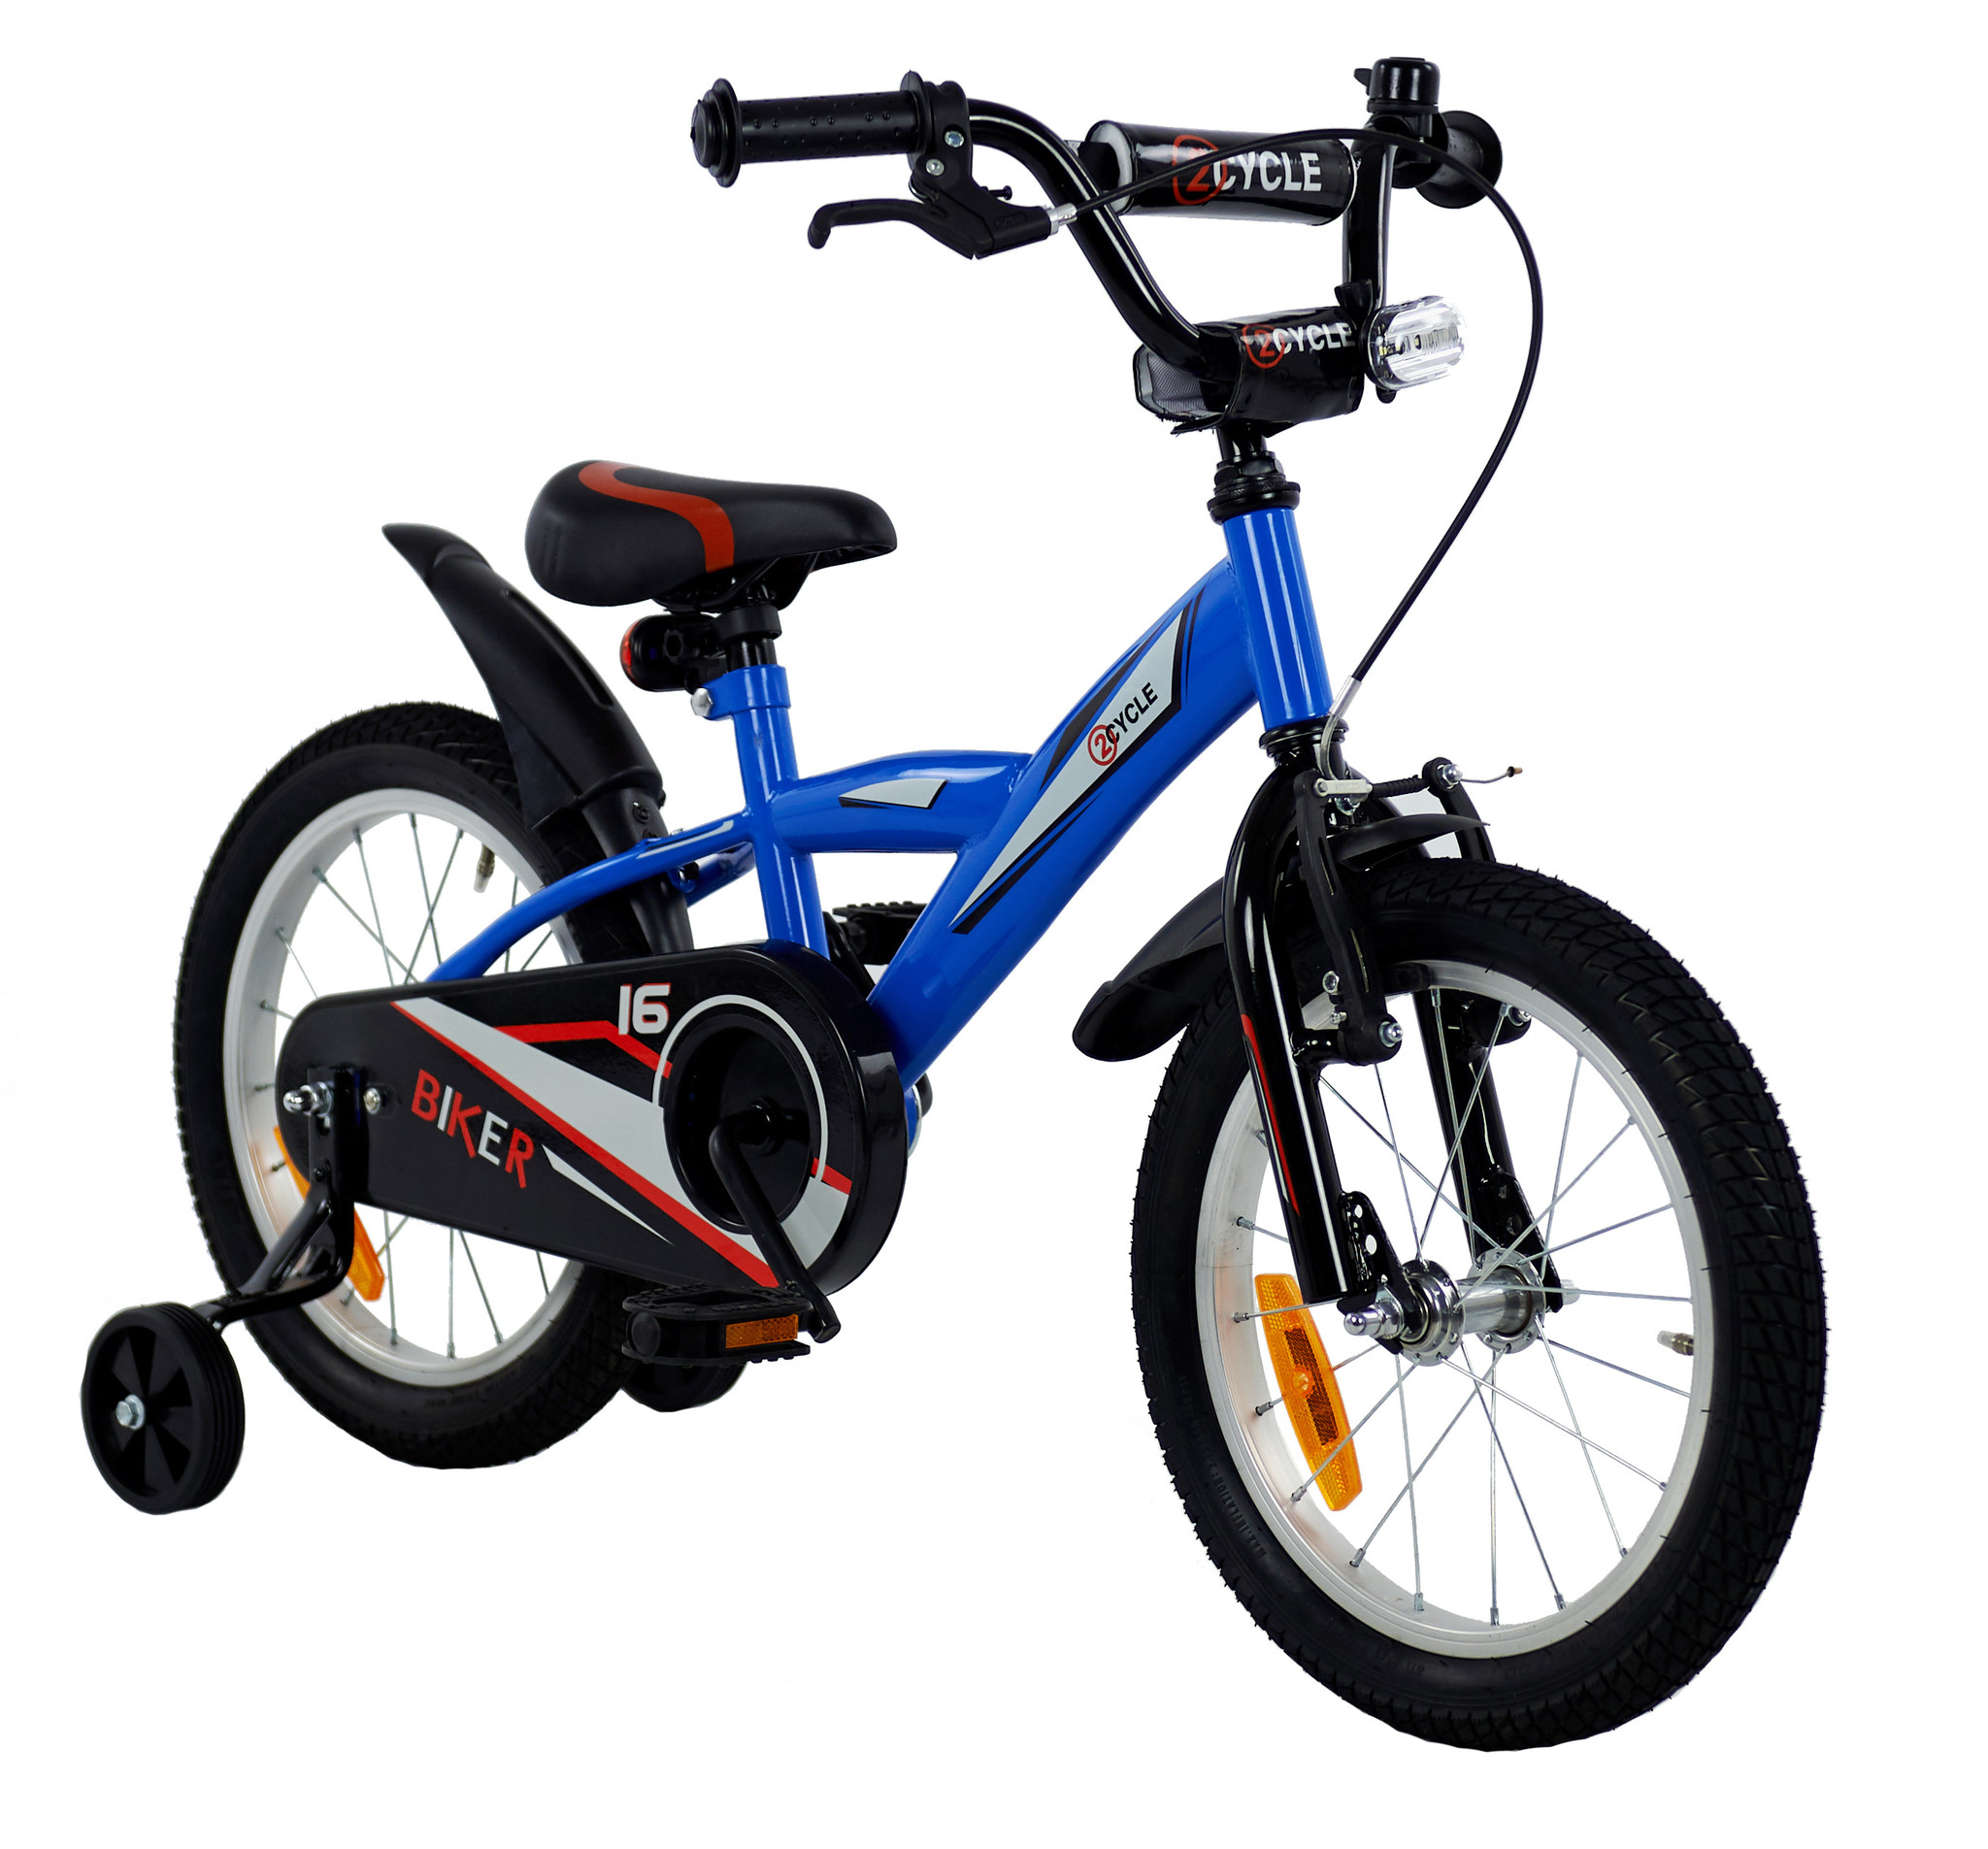 Goedkope blauwe 2Cycle Biker jongensfiets kopen |